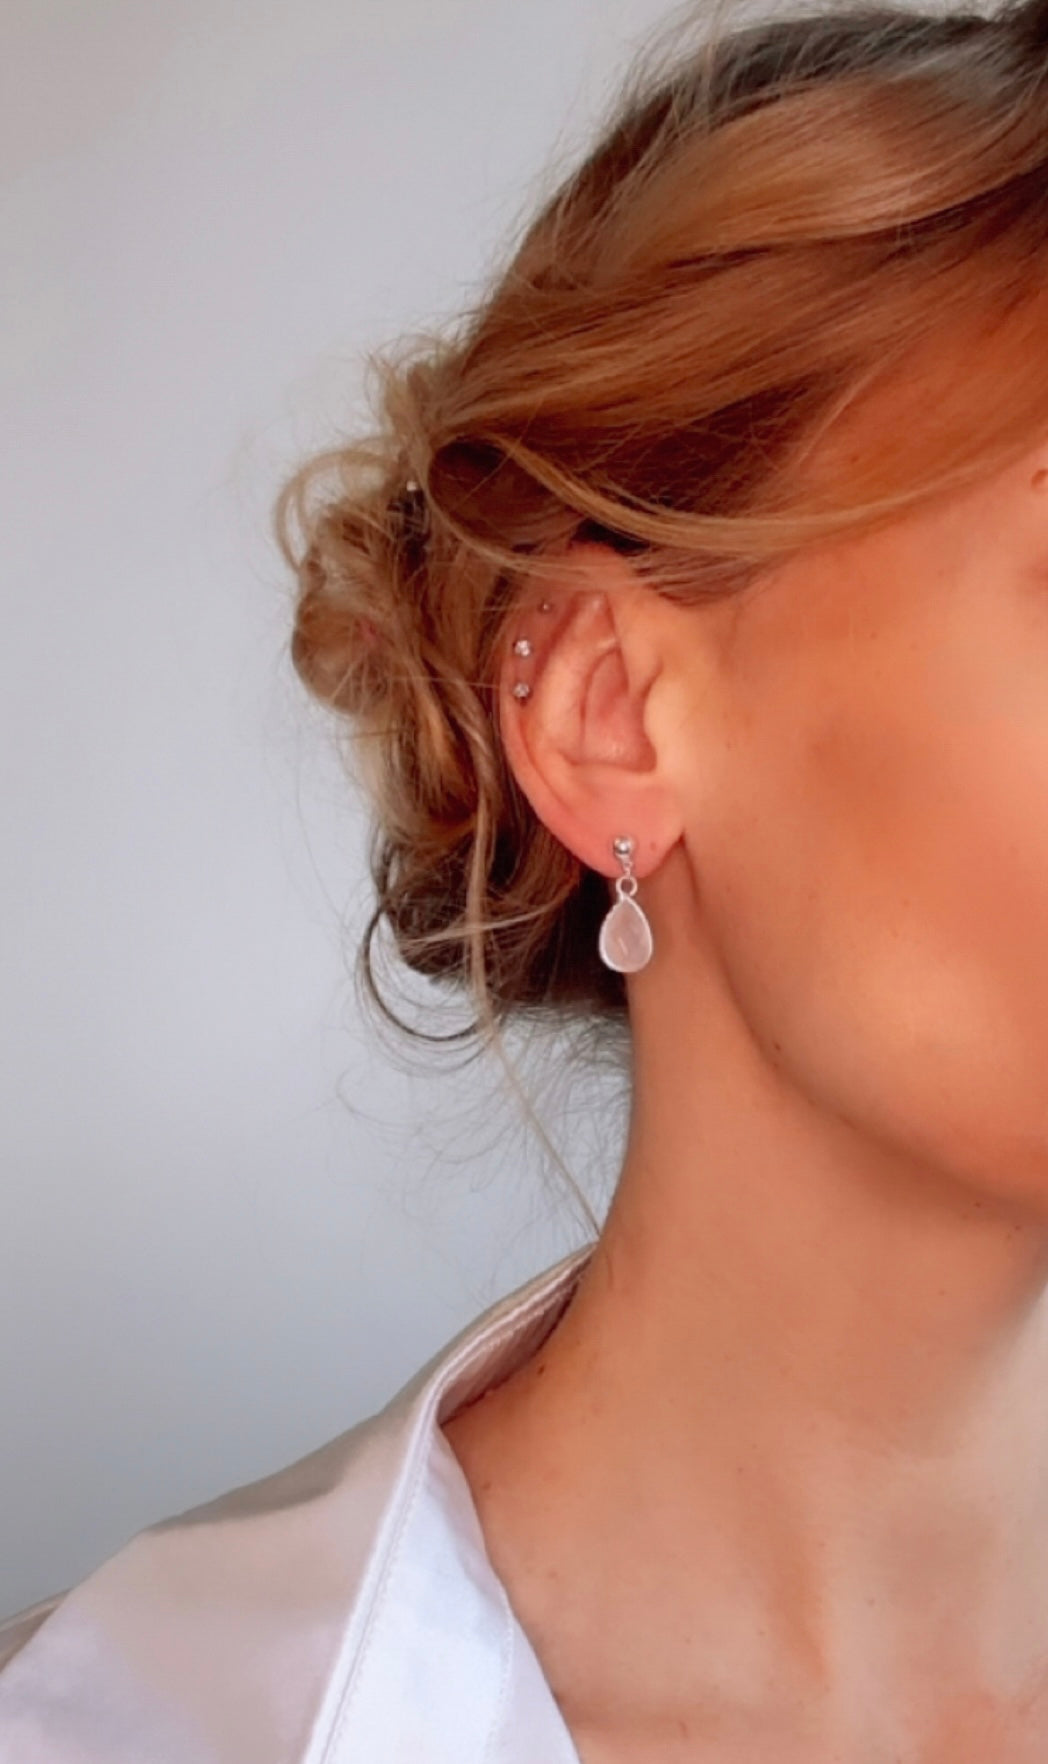 The Bella Earrings